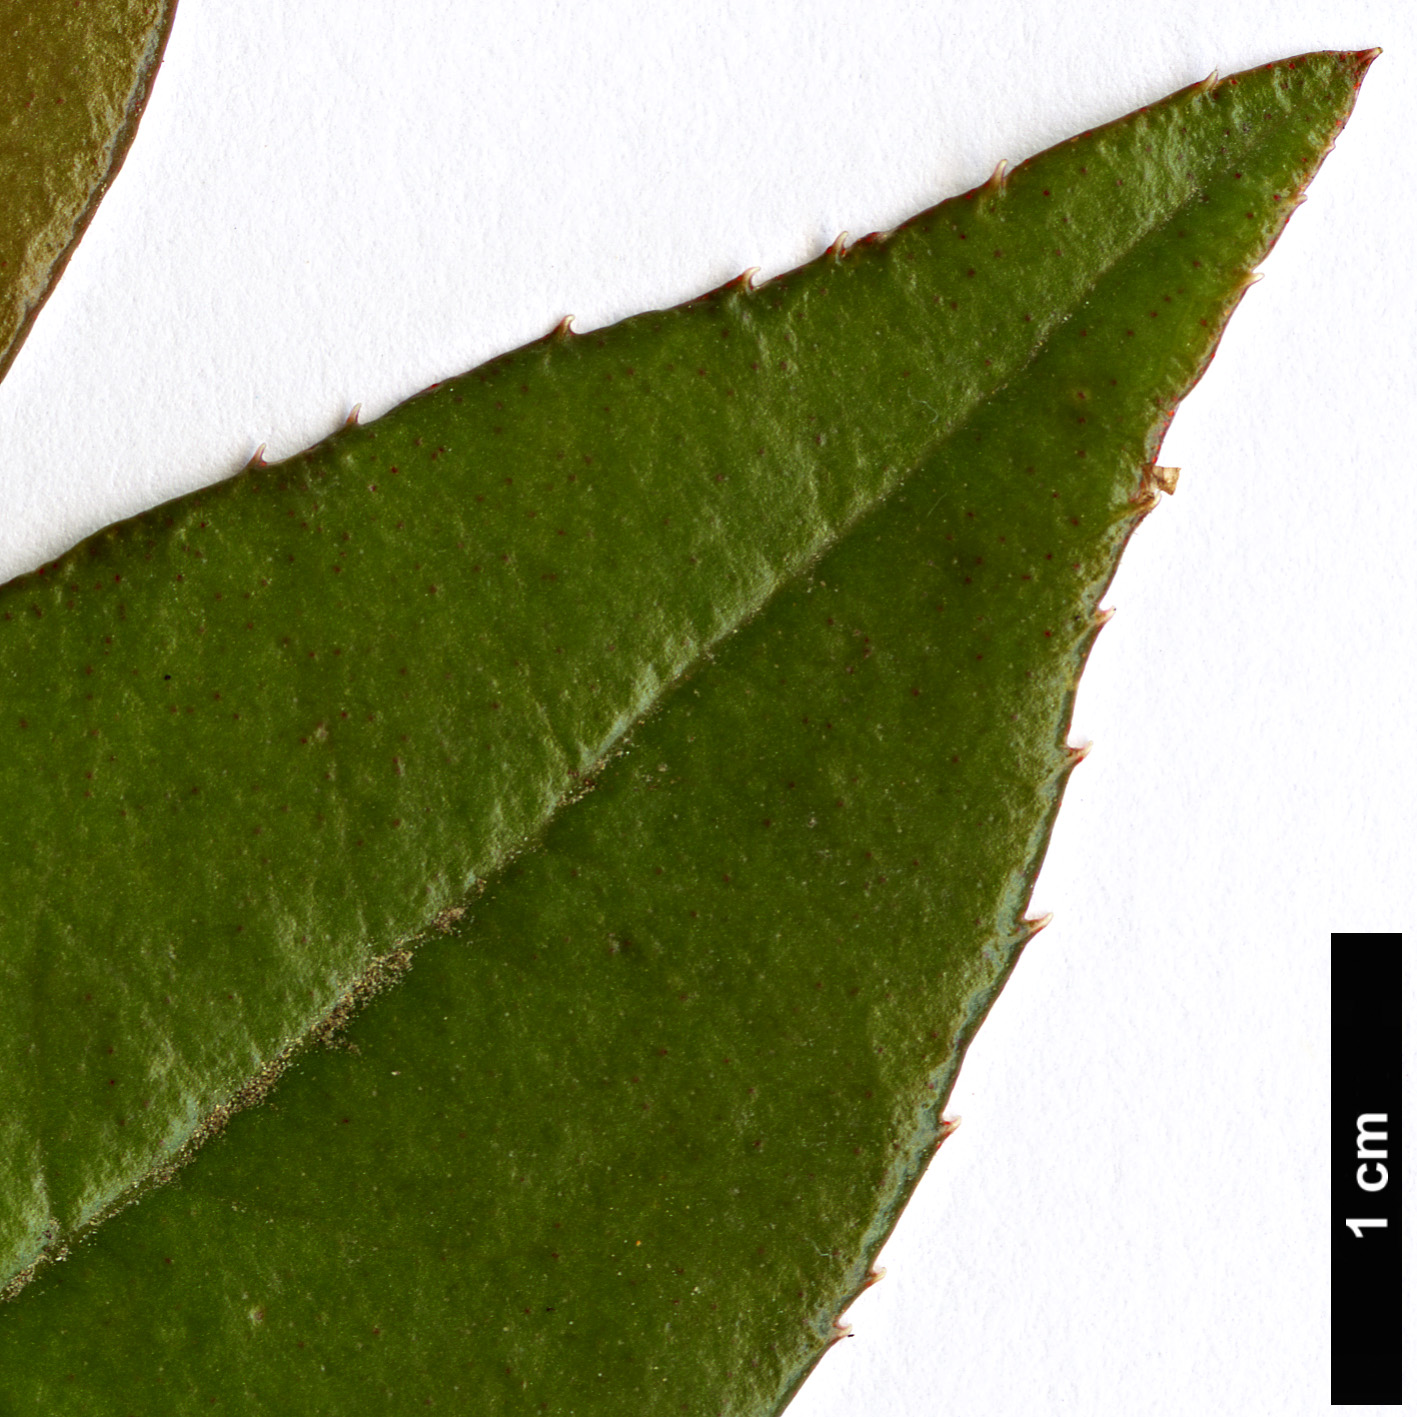 High resolution image: Family: Primulaceae - Genus: Myrsine - Taxon: semiserrata